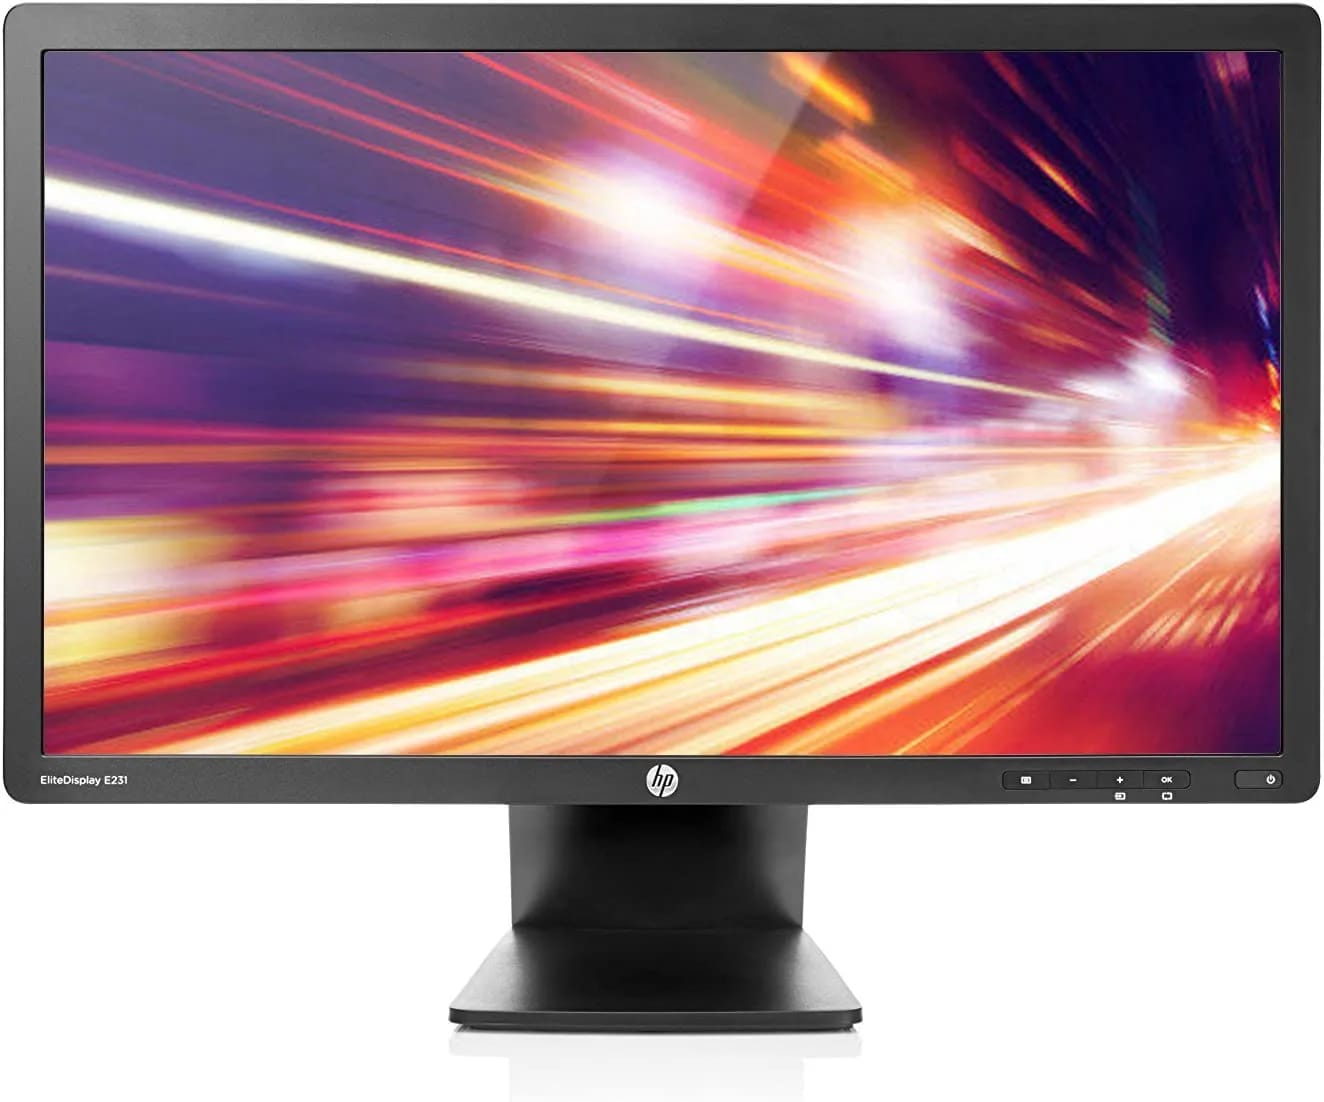 HP 23 inch EliteDisplay E231 monitor